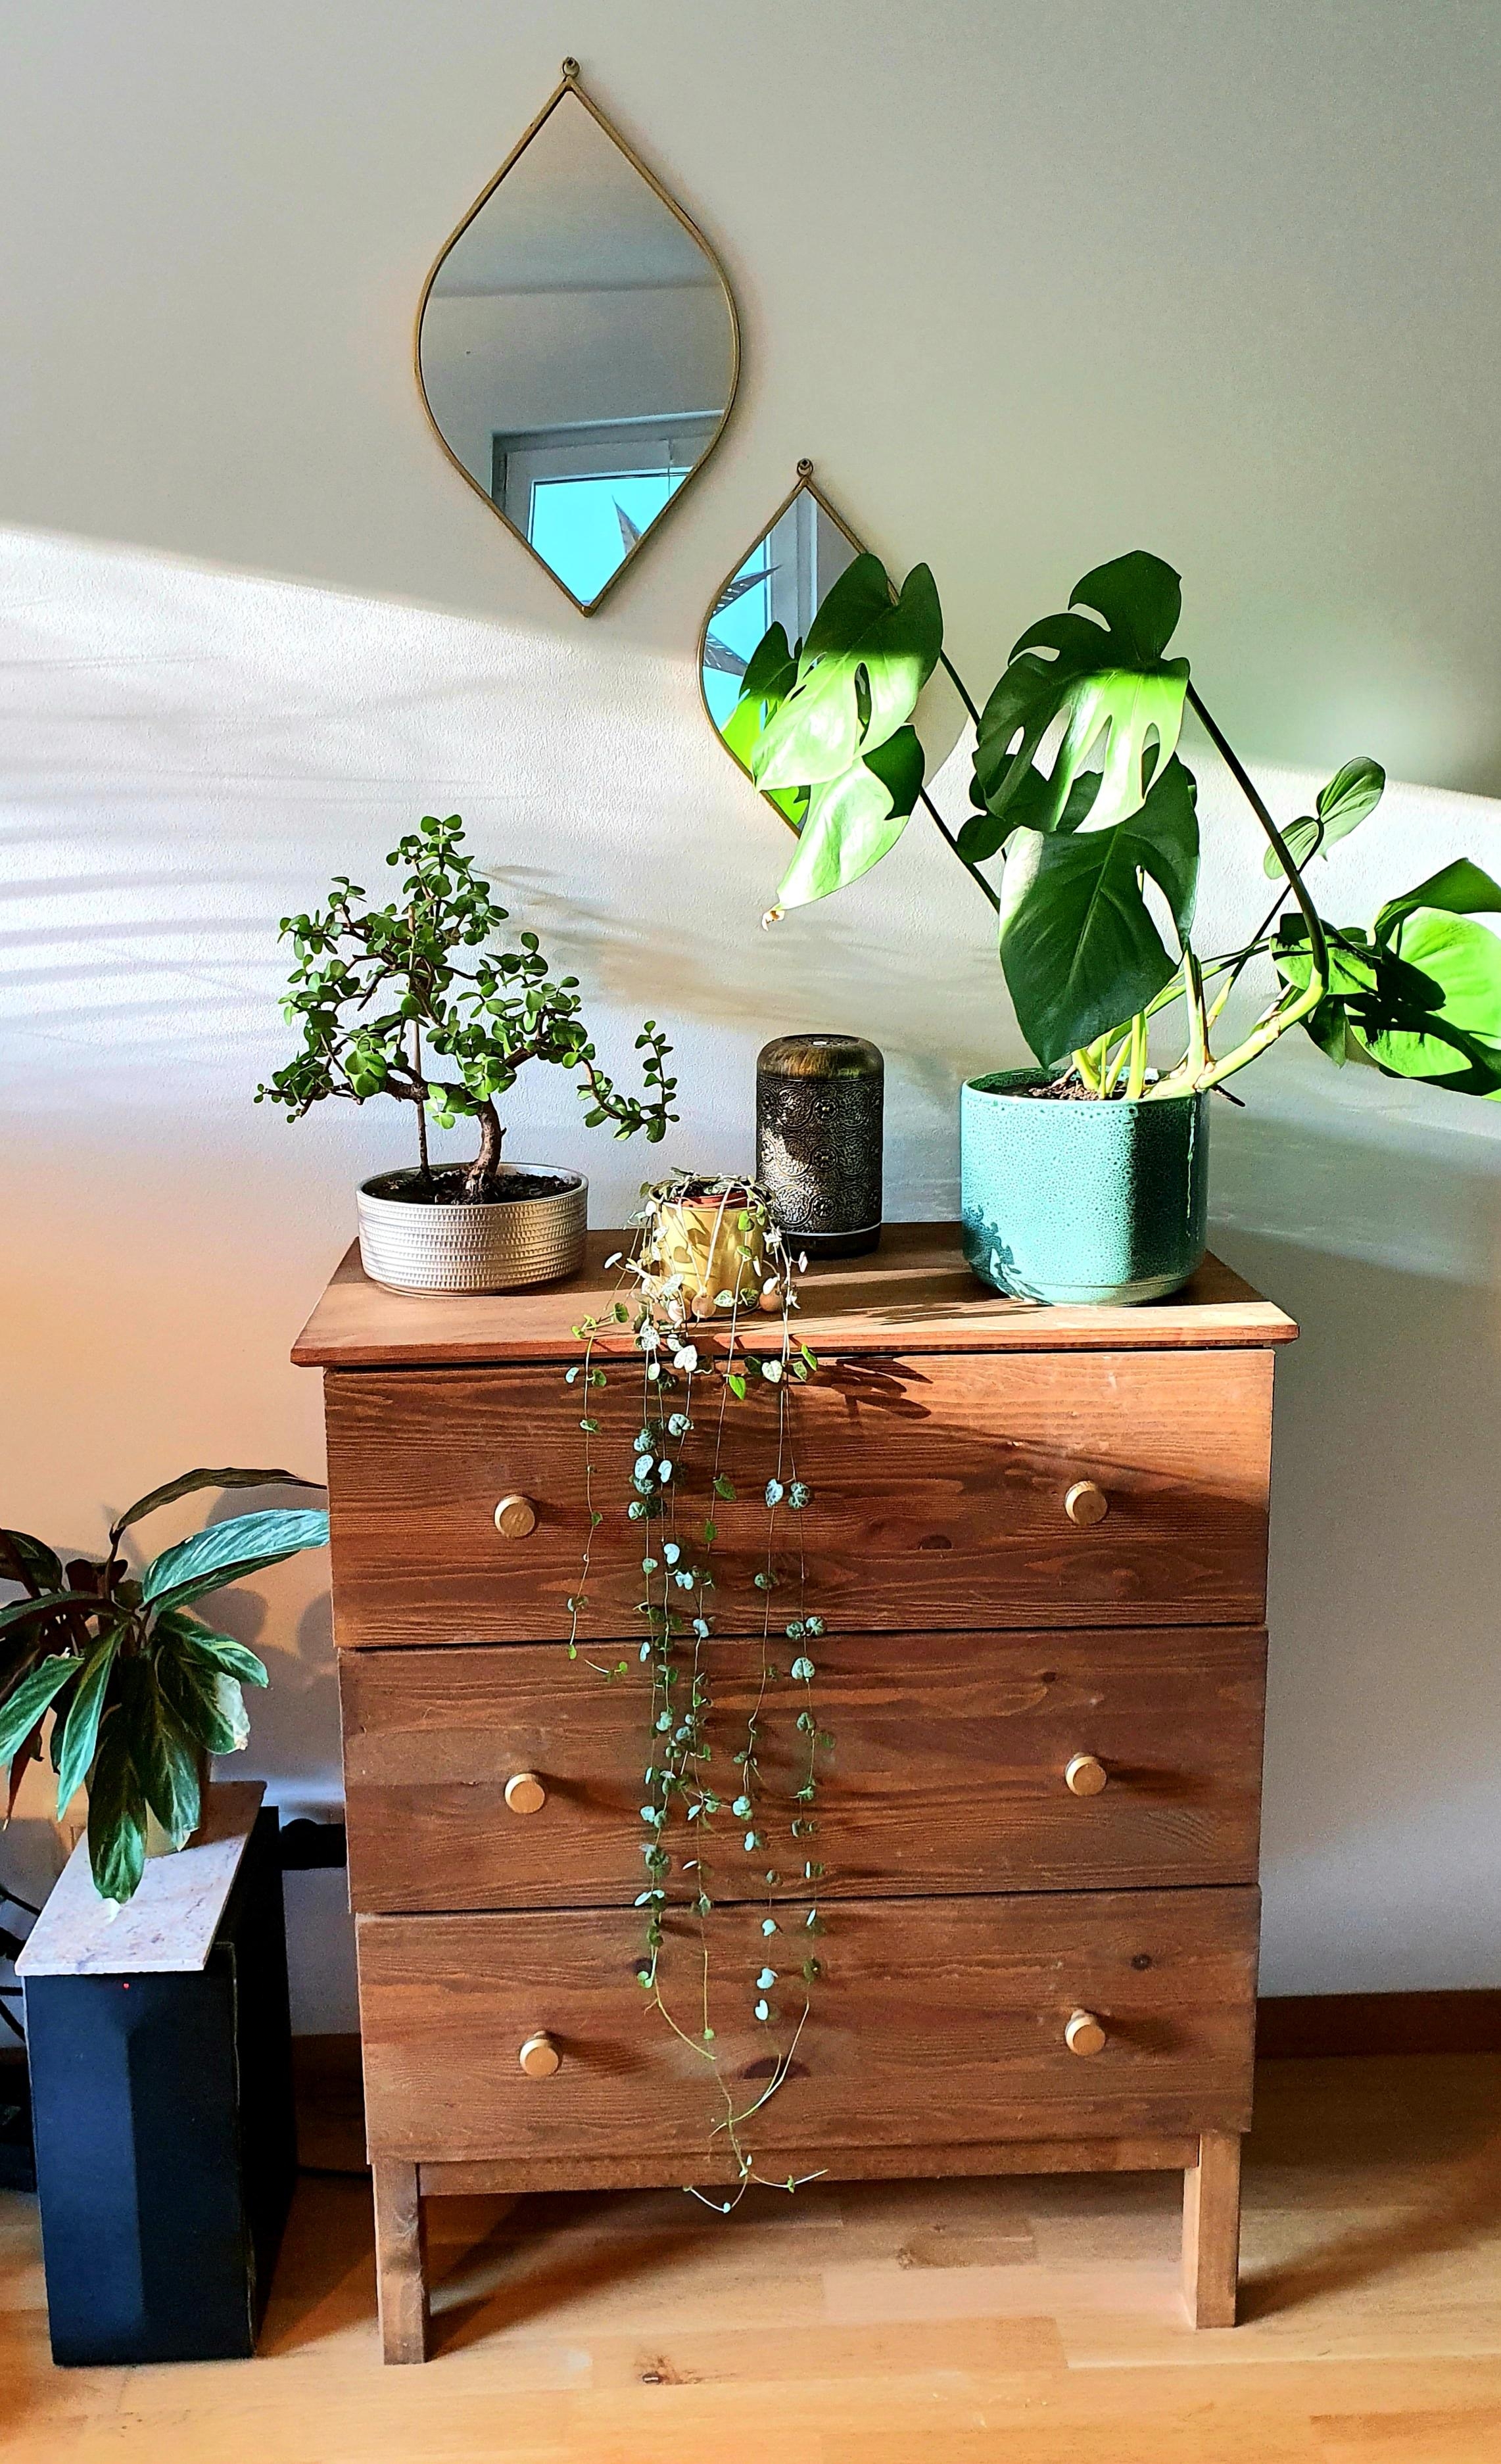 #Livingroom #ikeacupboard #urbanjungle #monstera #bonsai 